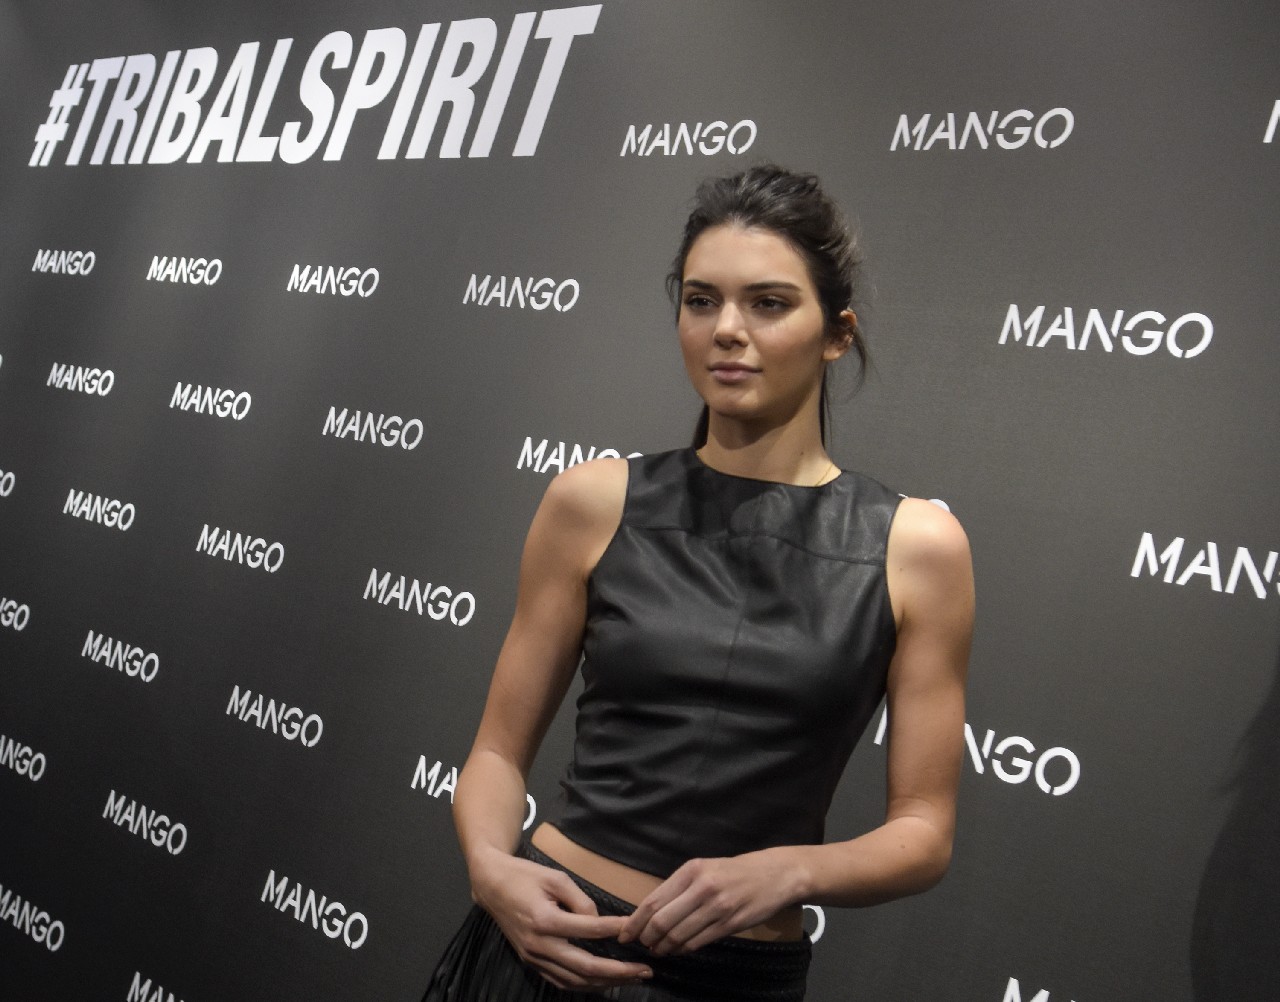 Mango Kendall Jenner party Barcellona: la top model presenta la collezione Tribal Spirit, video e foto